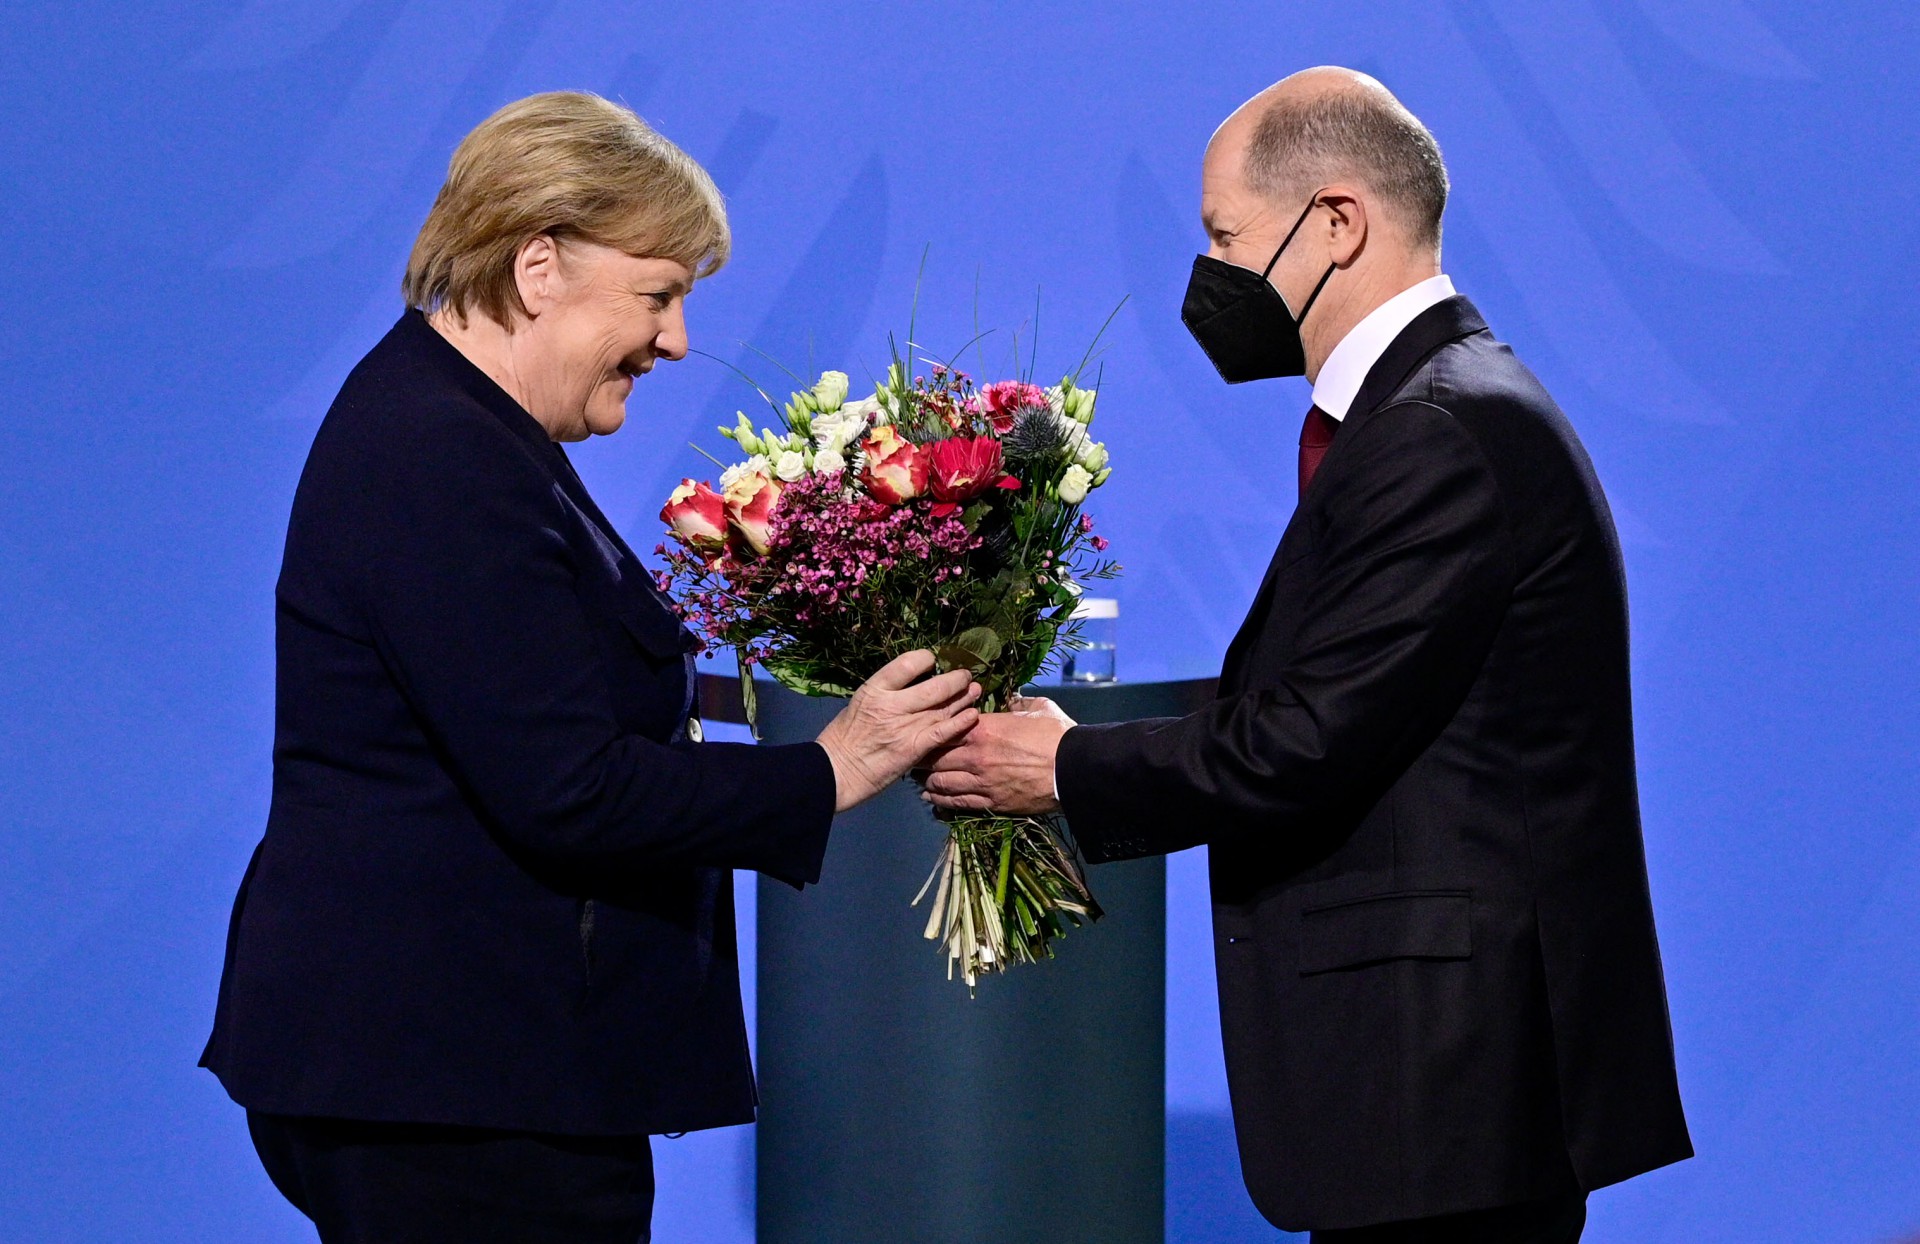 O chanceler alemão Olaf Scholz dá um buquê de flores para sua antecessora Angela Merkel depois que ela lhe entregou o cargo na Chancelaria em Berlim em 8 de dezembro de 2021(Foto: John MACDOUGALL / AFP)